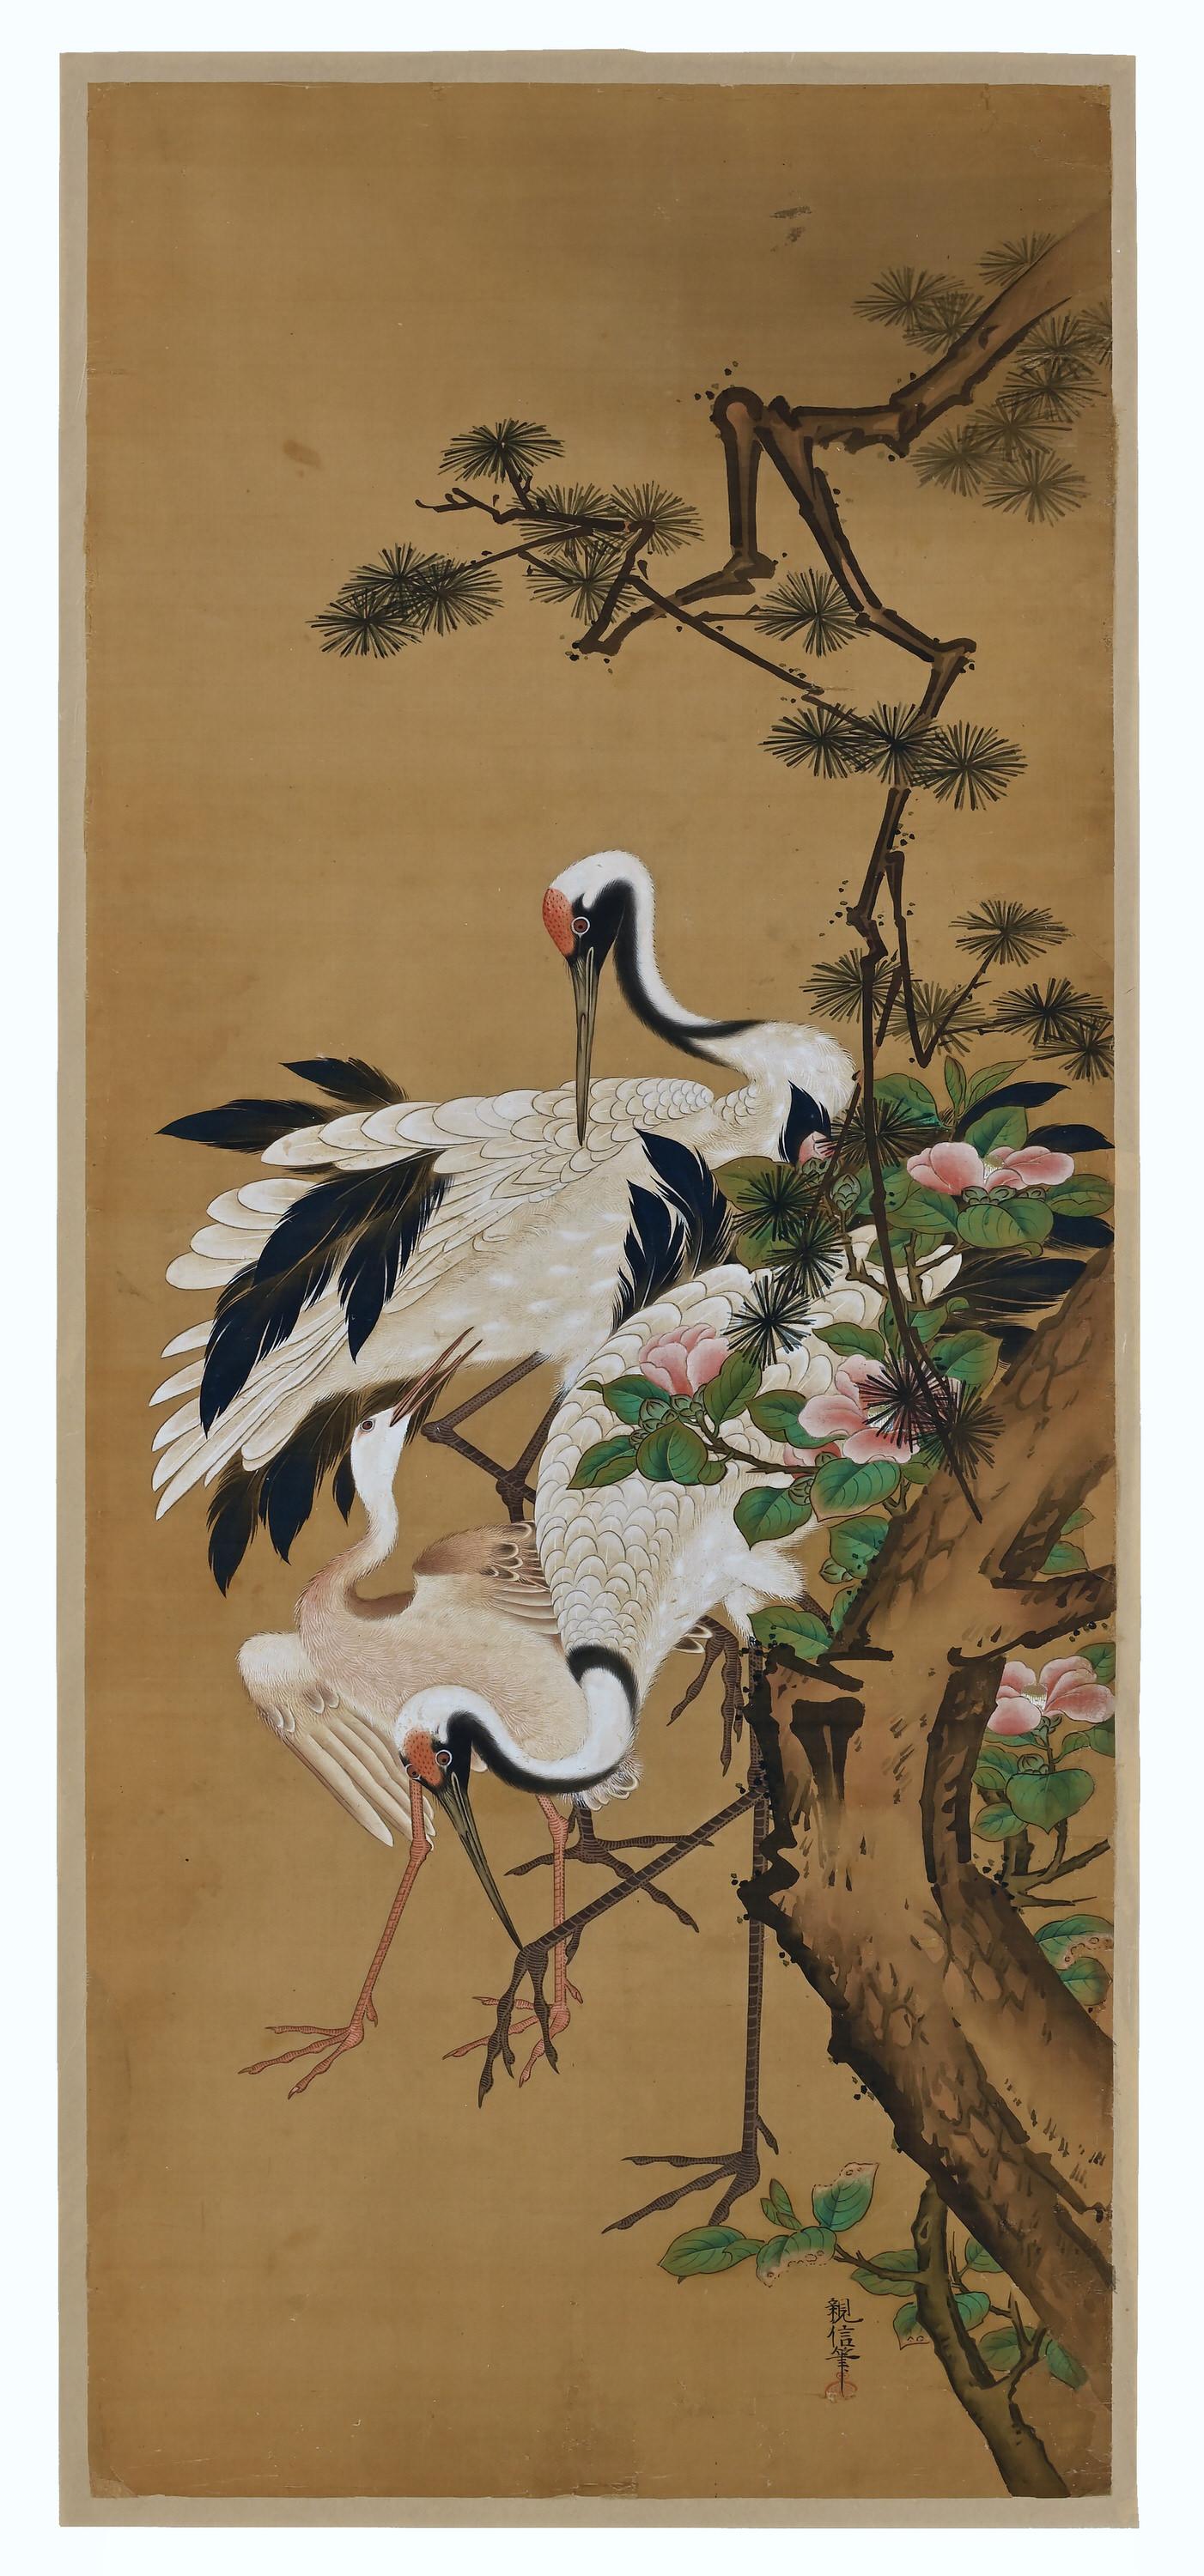 Edo 19th Century Japanese Silk Painting by Kano Chikanobu, Crane, Pine & Camelia